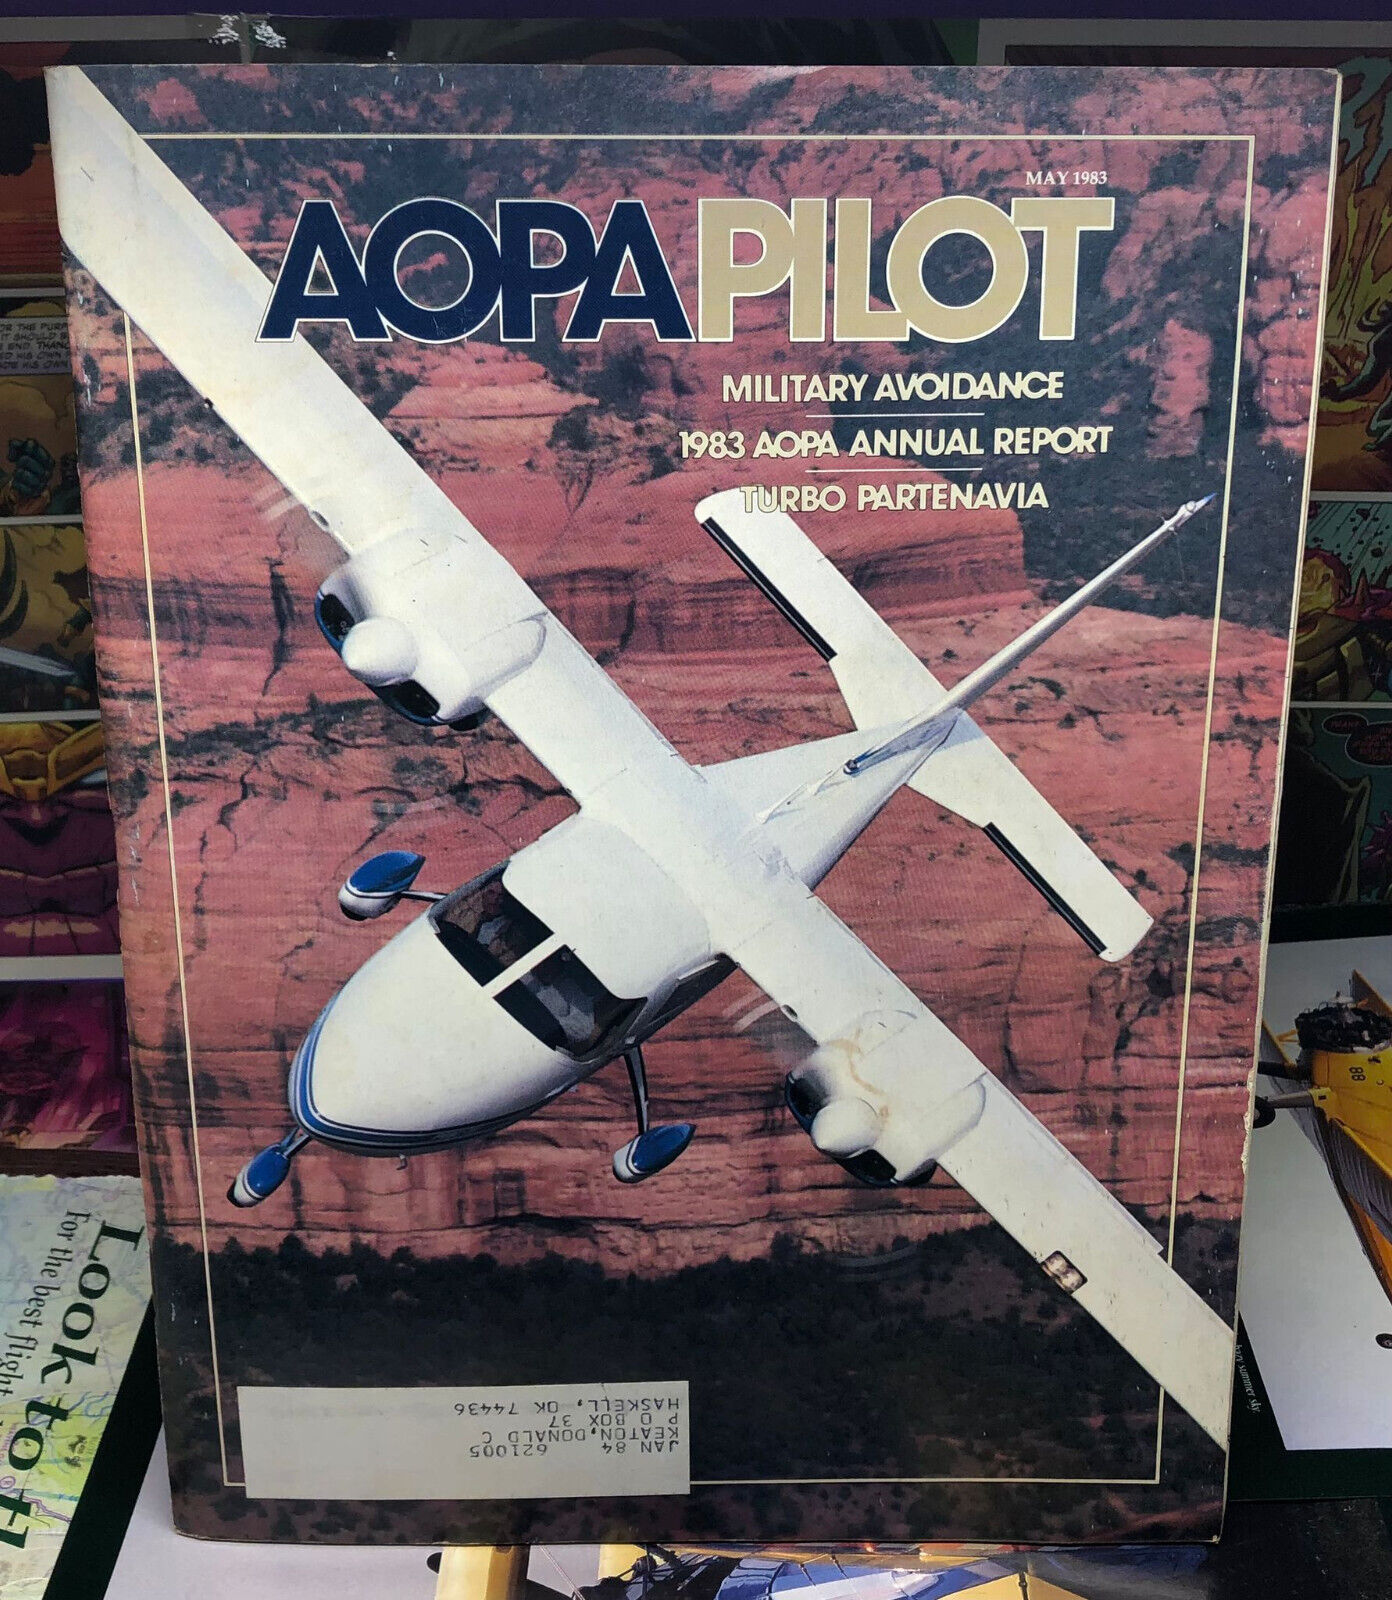 Aopa Pilot Magazine - May 1983,  Military Avoidance, Turbo Partenavia